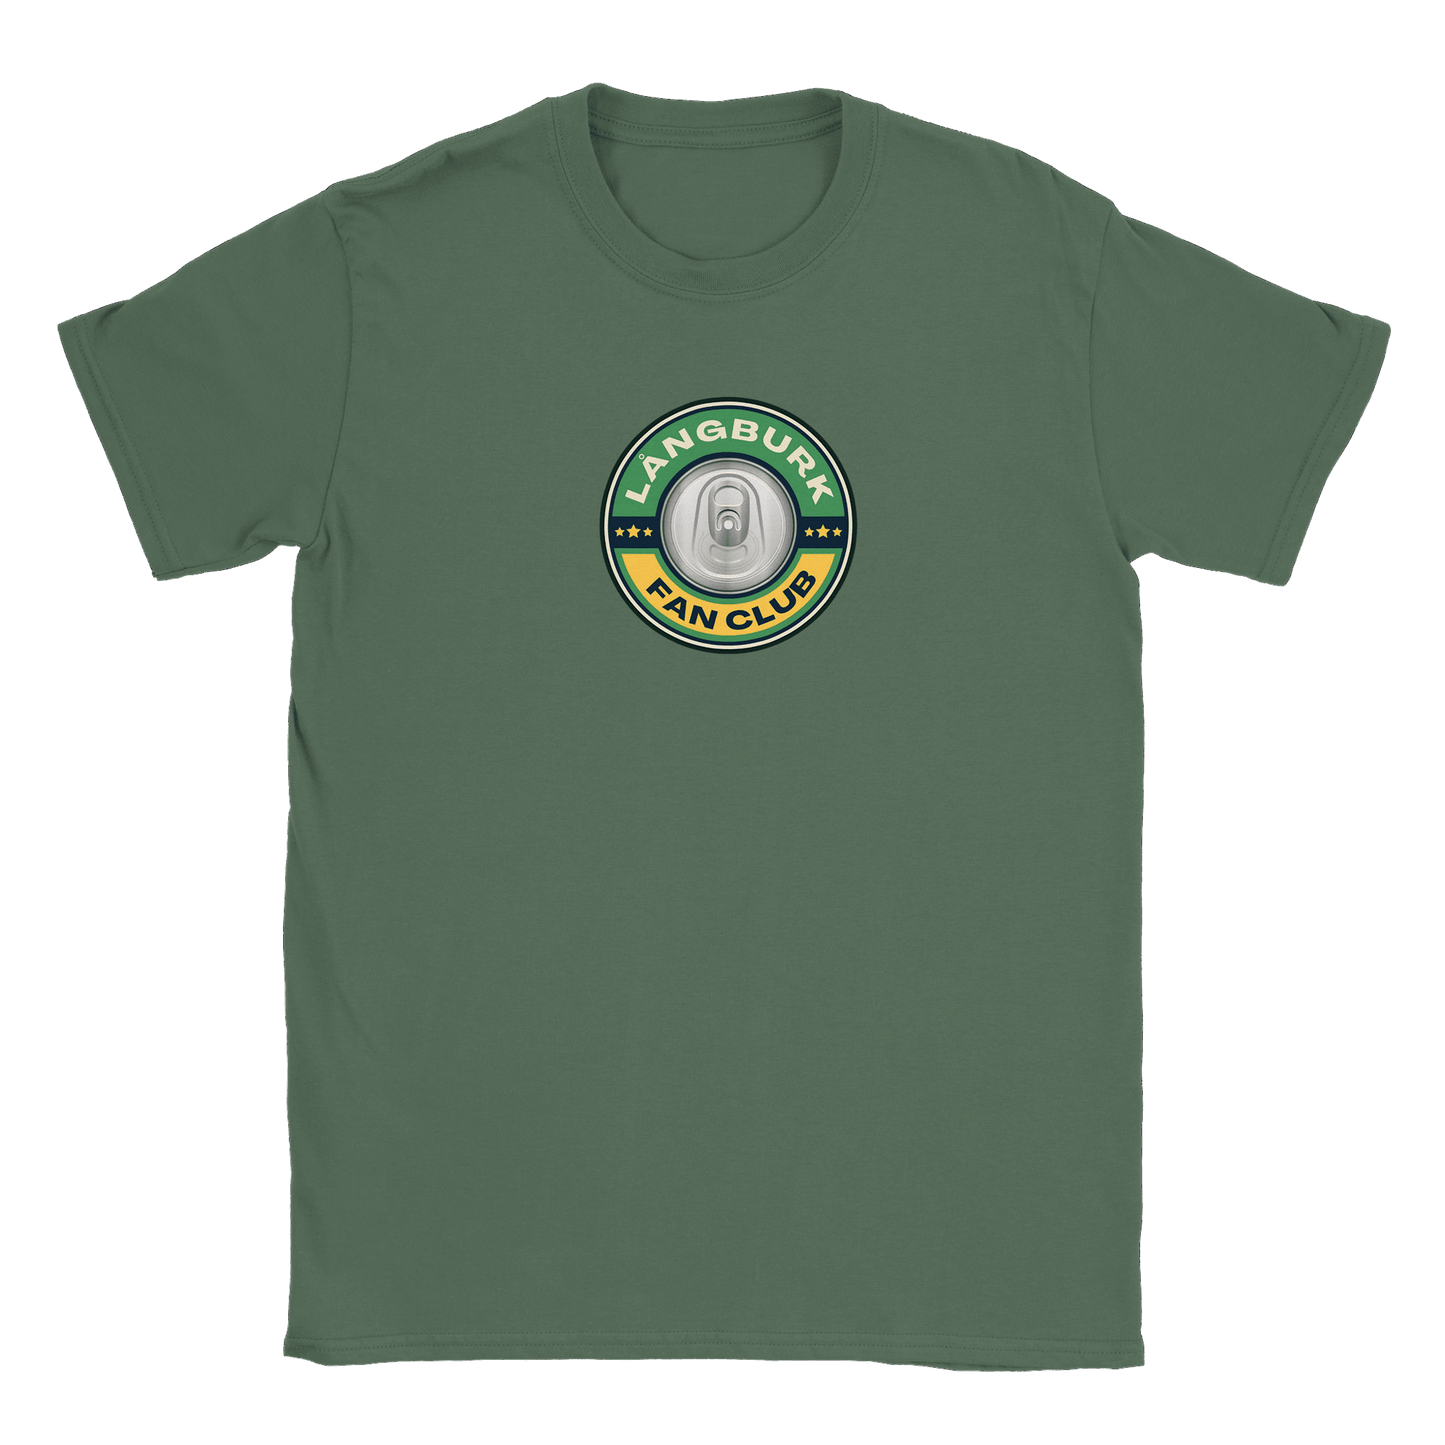 Långburk Fan Club - T-shirt Militärgrön